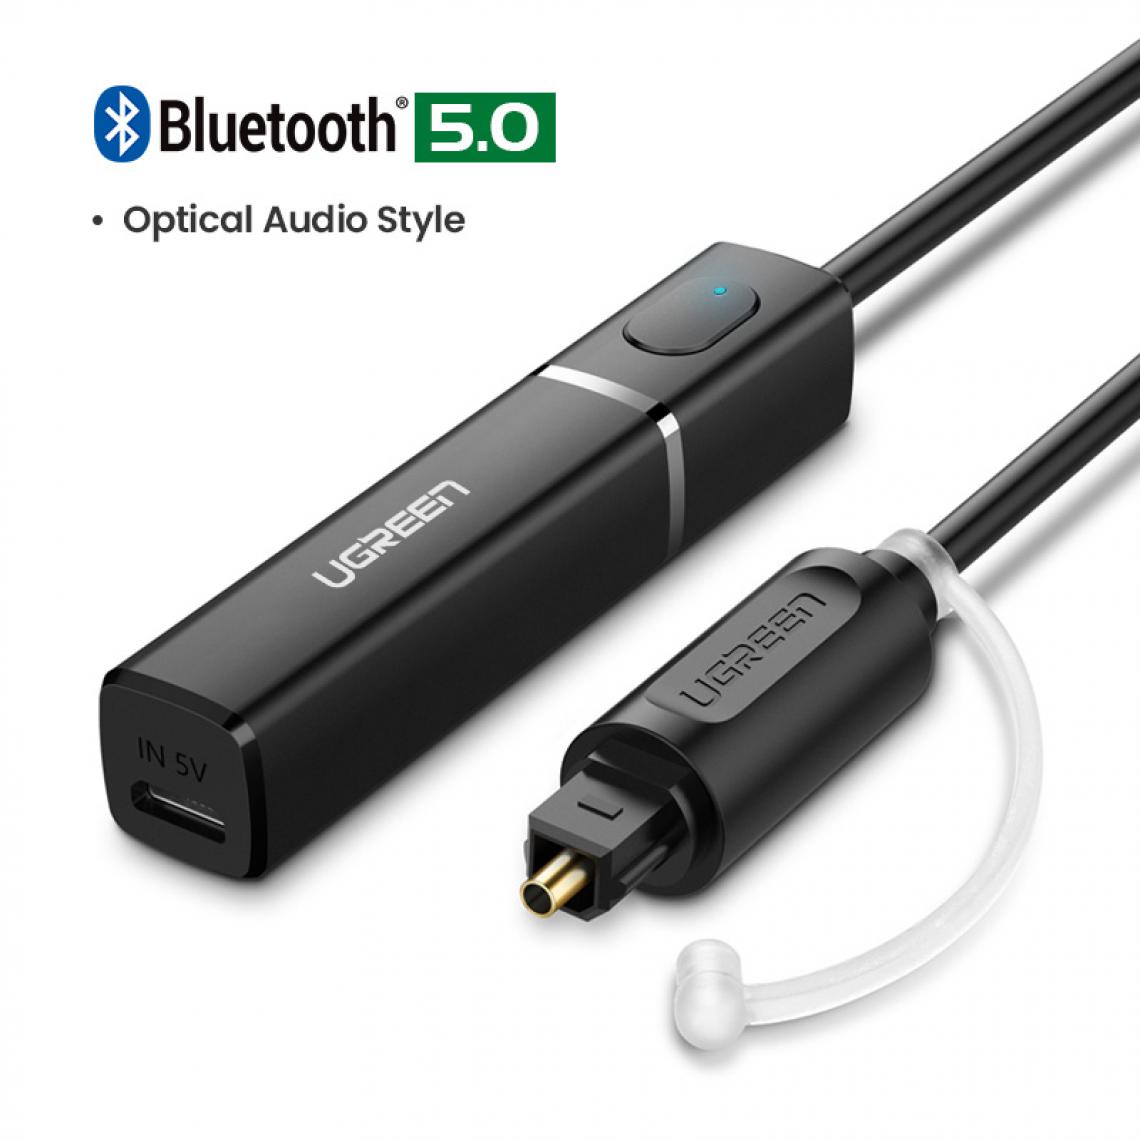 Generic -  Adaptateur Bluetooth 5.0 Optical Audio style ,  optique numérique sans fil , pour TV, PC, PS4, aptX LL, SPDIF, Toslink, musique - Noir  - Clé USB Wifi